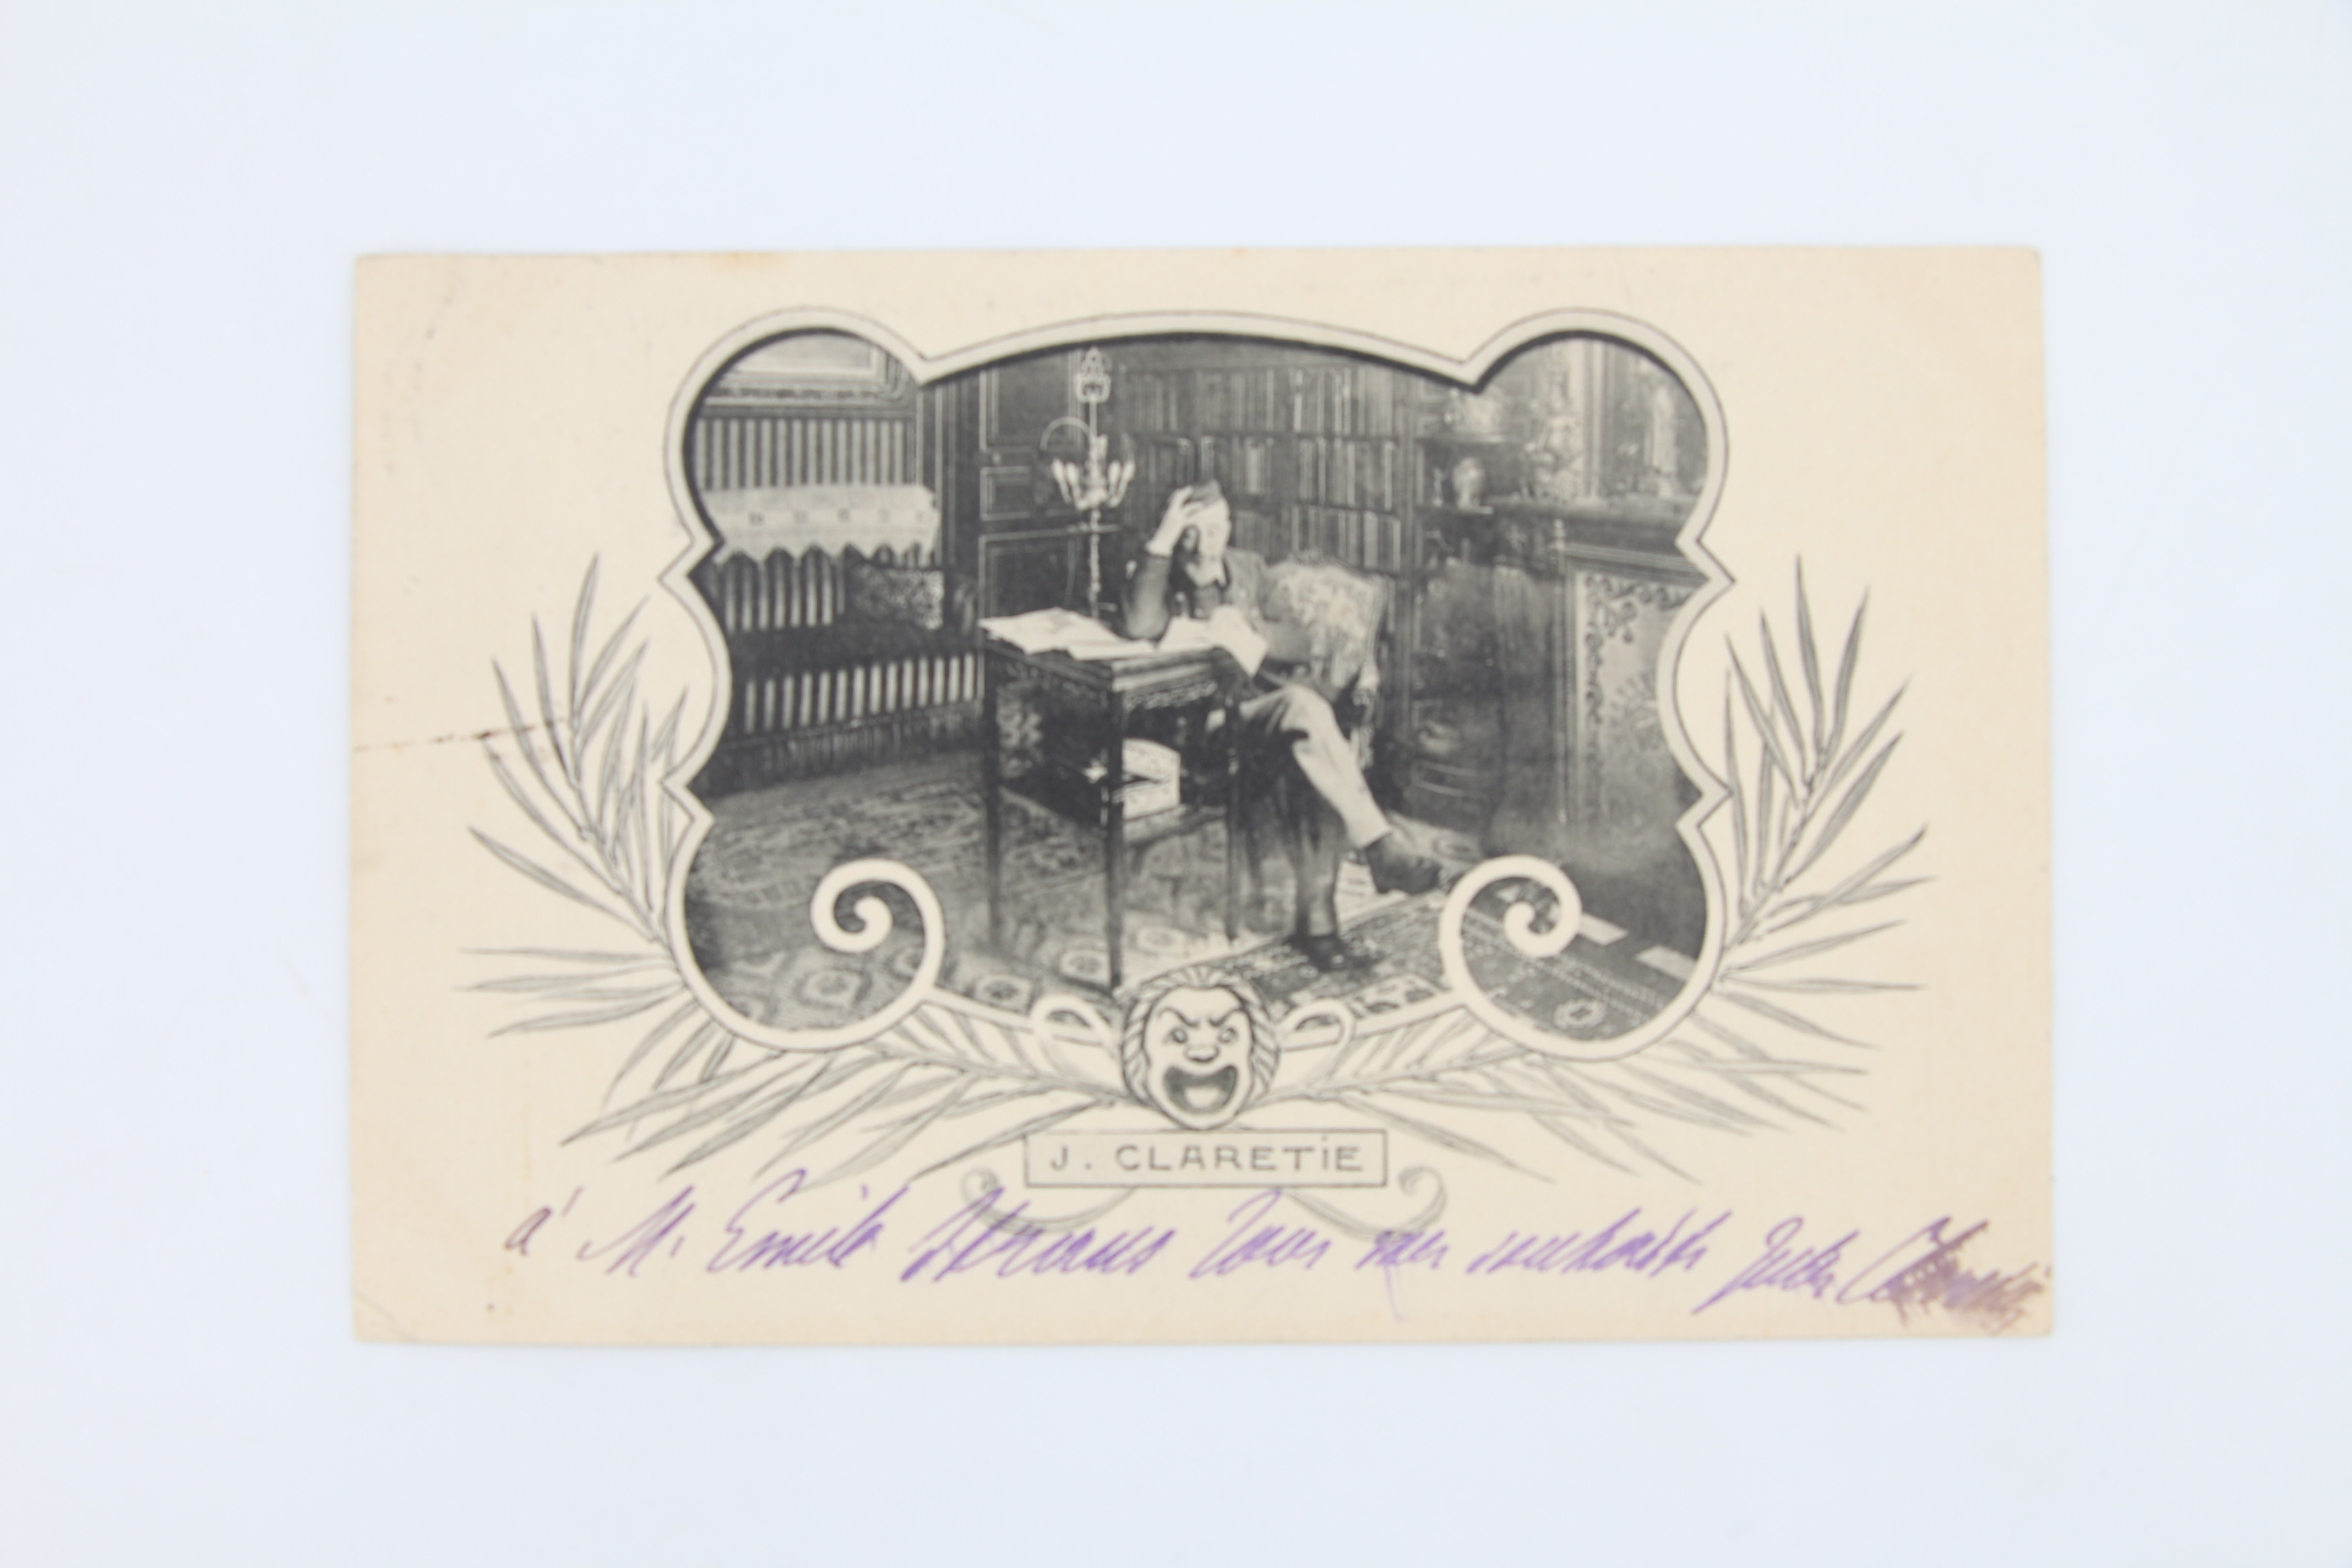 Carte postale autographe signée adressée à Emile Straus